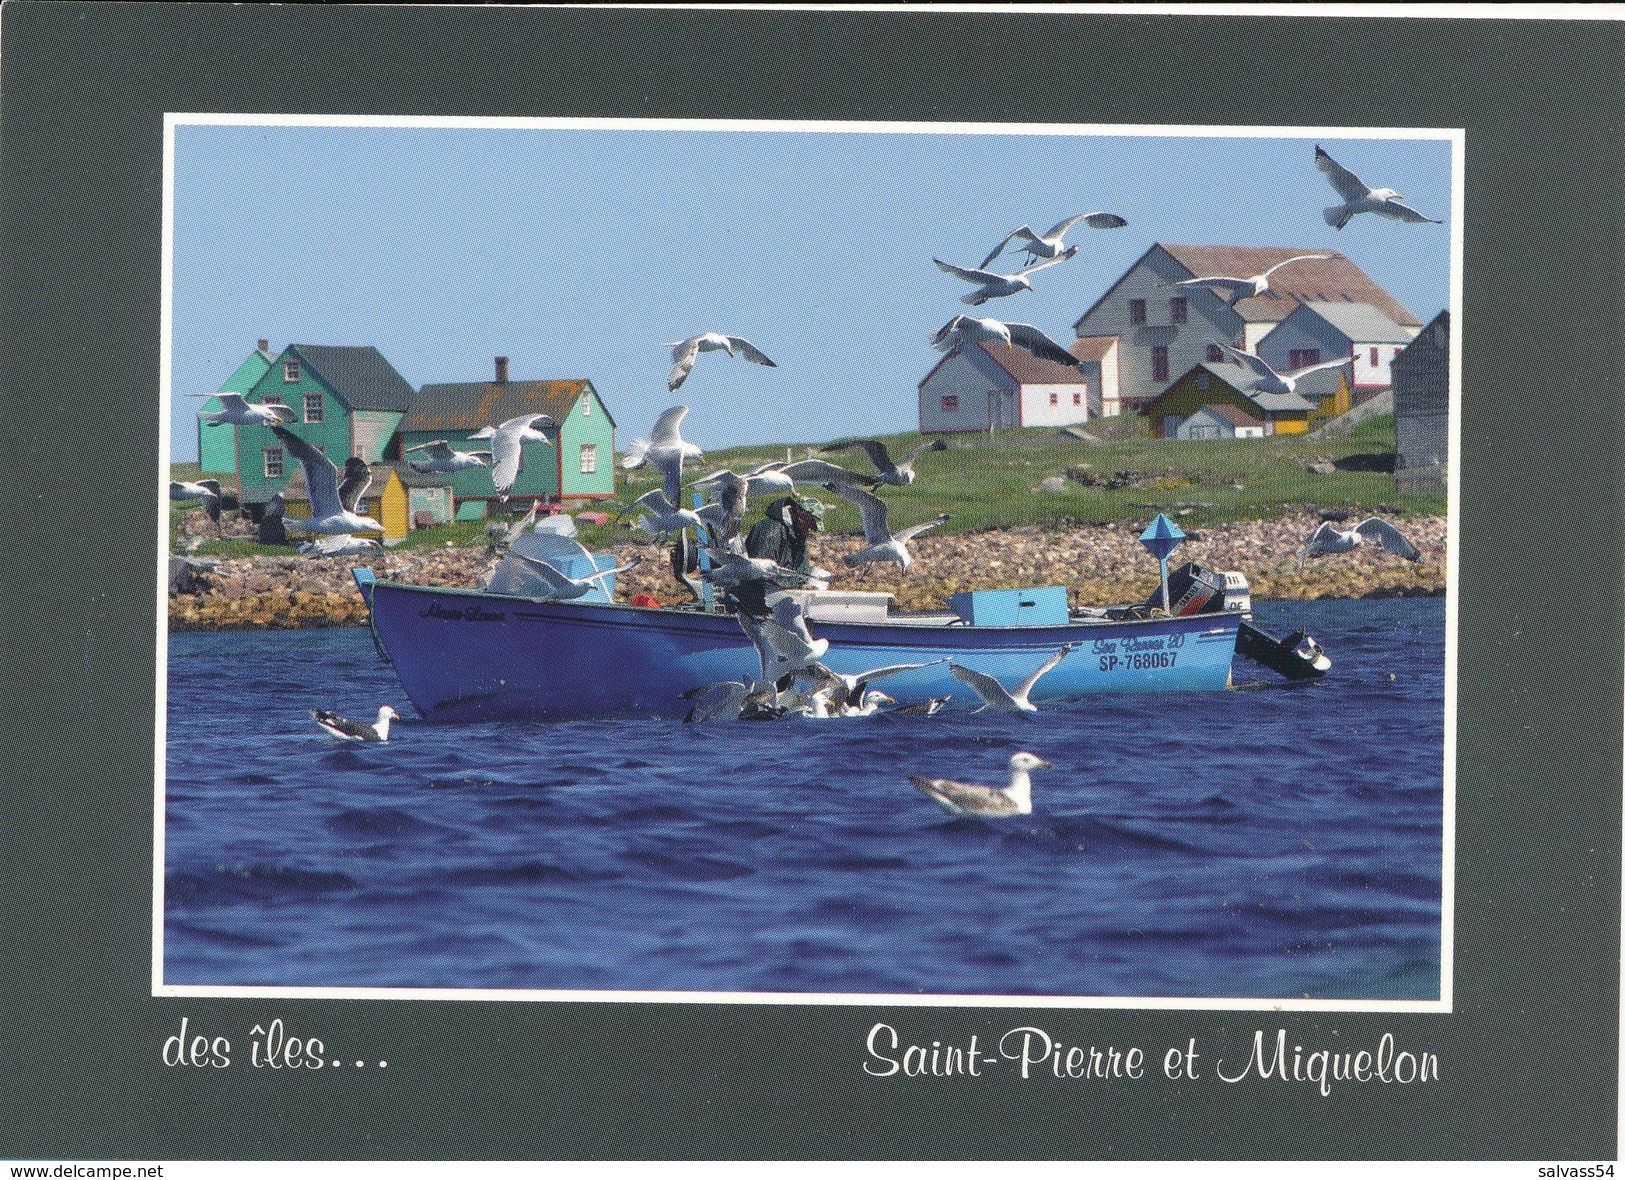 SAINT-PIERRE-ET-MIQUELON : Des Iles... - Saint-Pierre-et-Miquelon